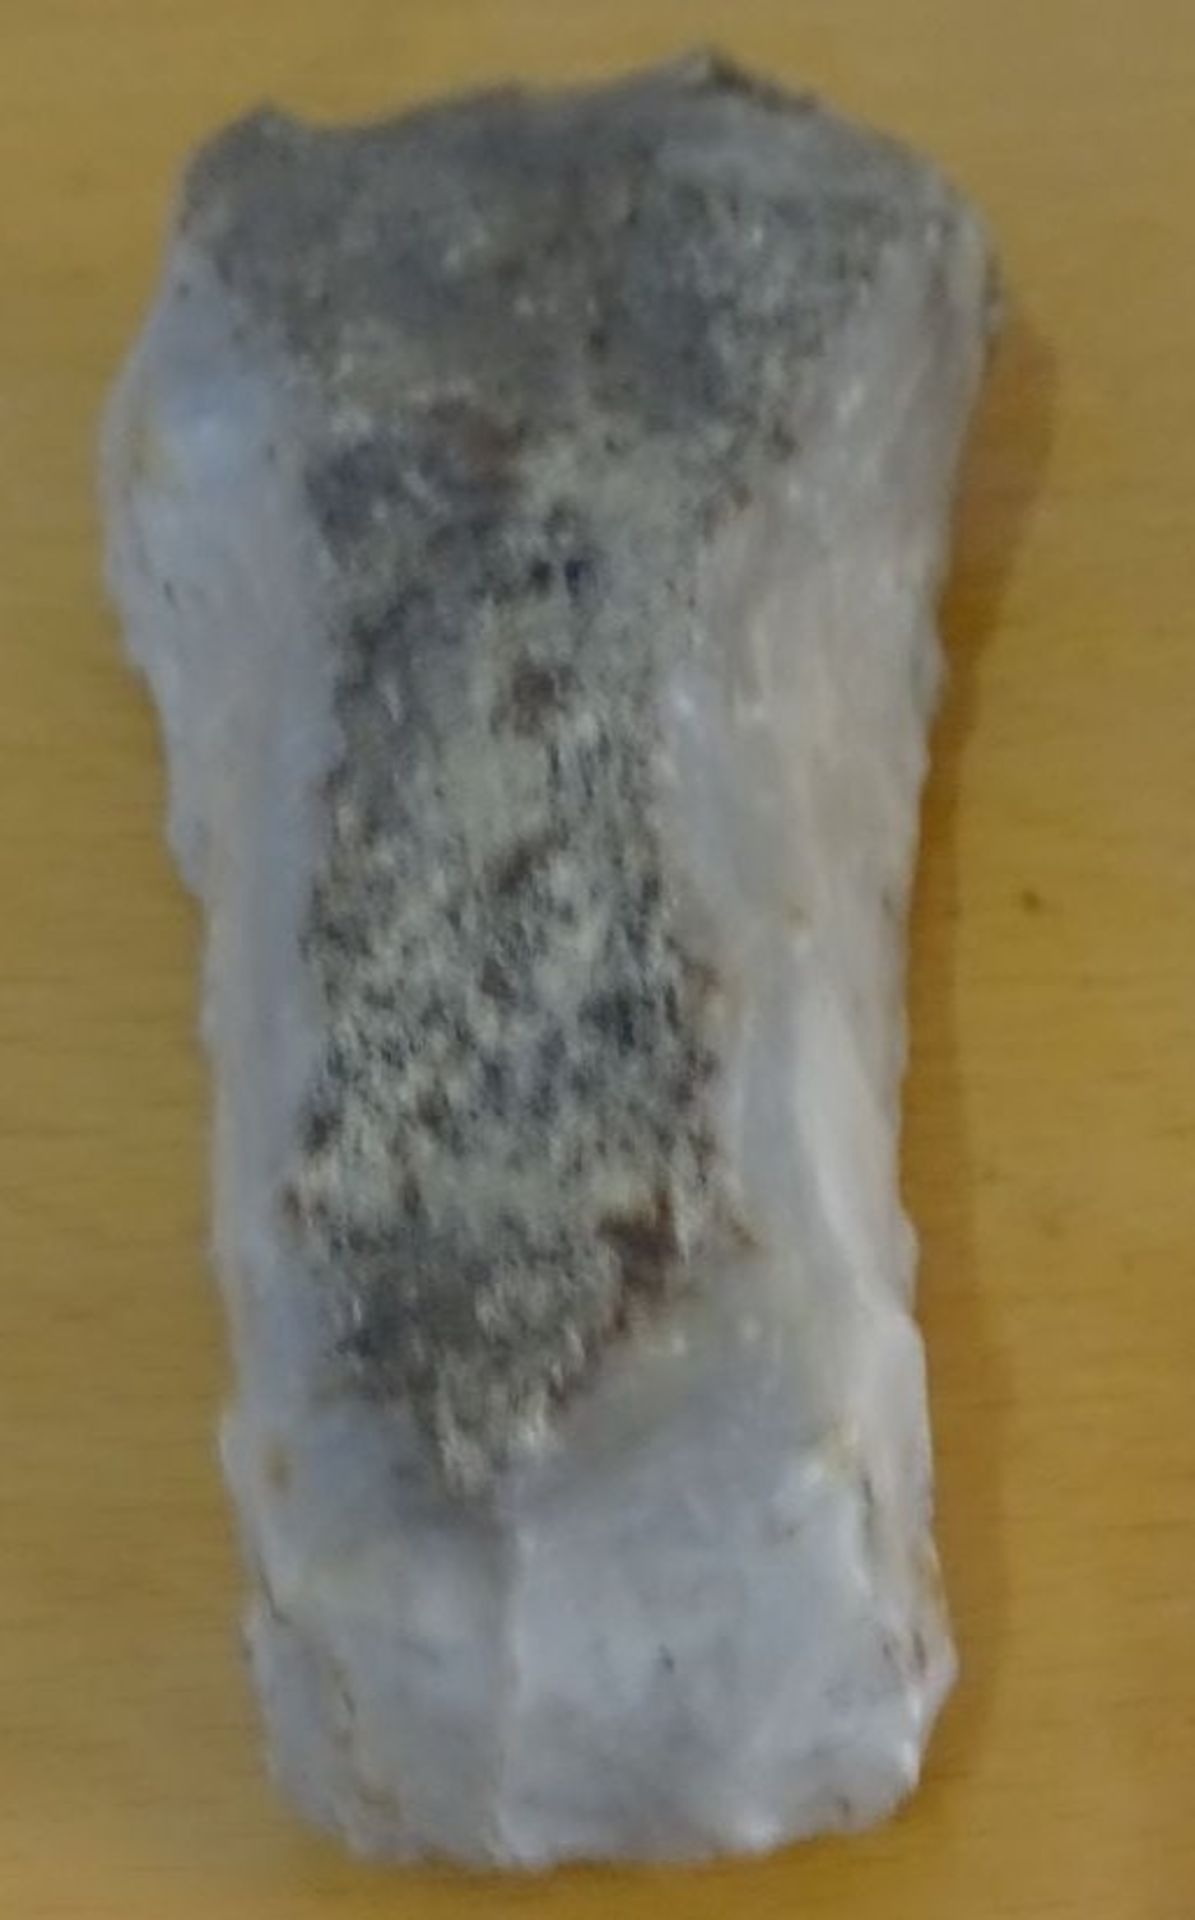 Faustkeil, Mineral-Quartz?, Fundort Dänemark, 15x6 cm